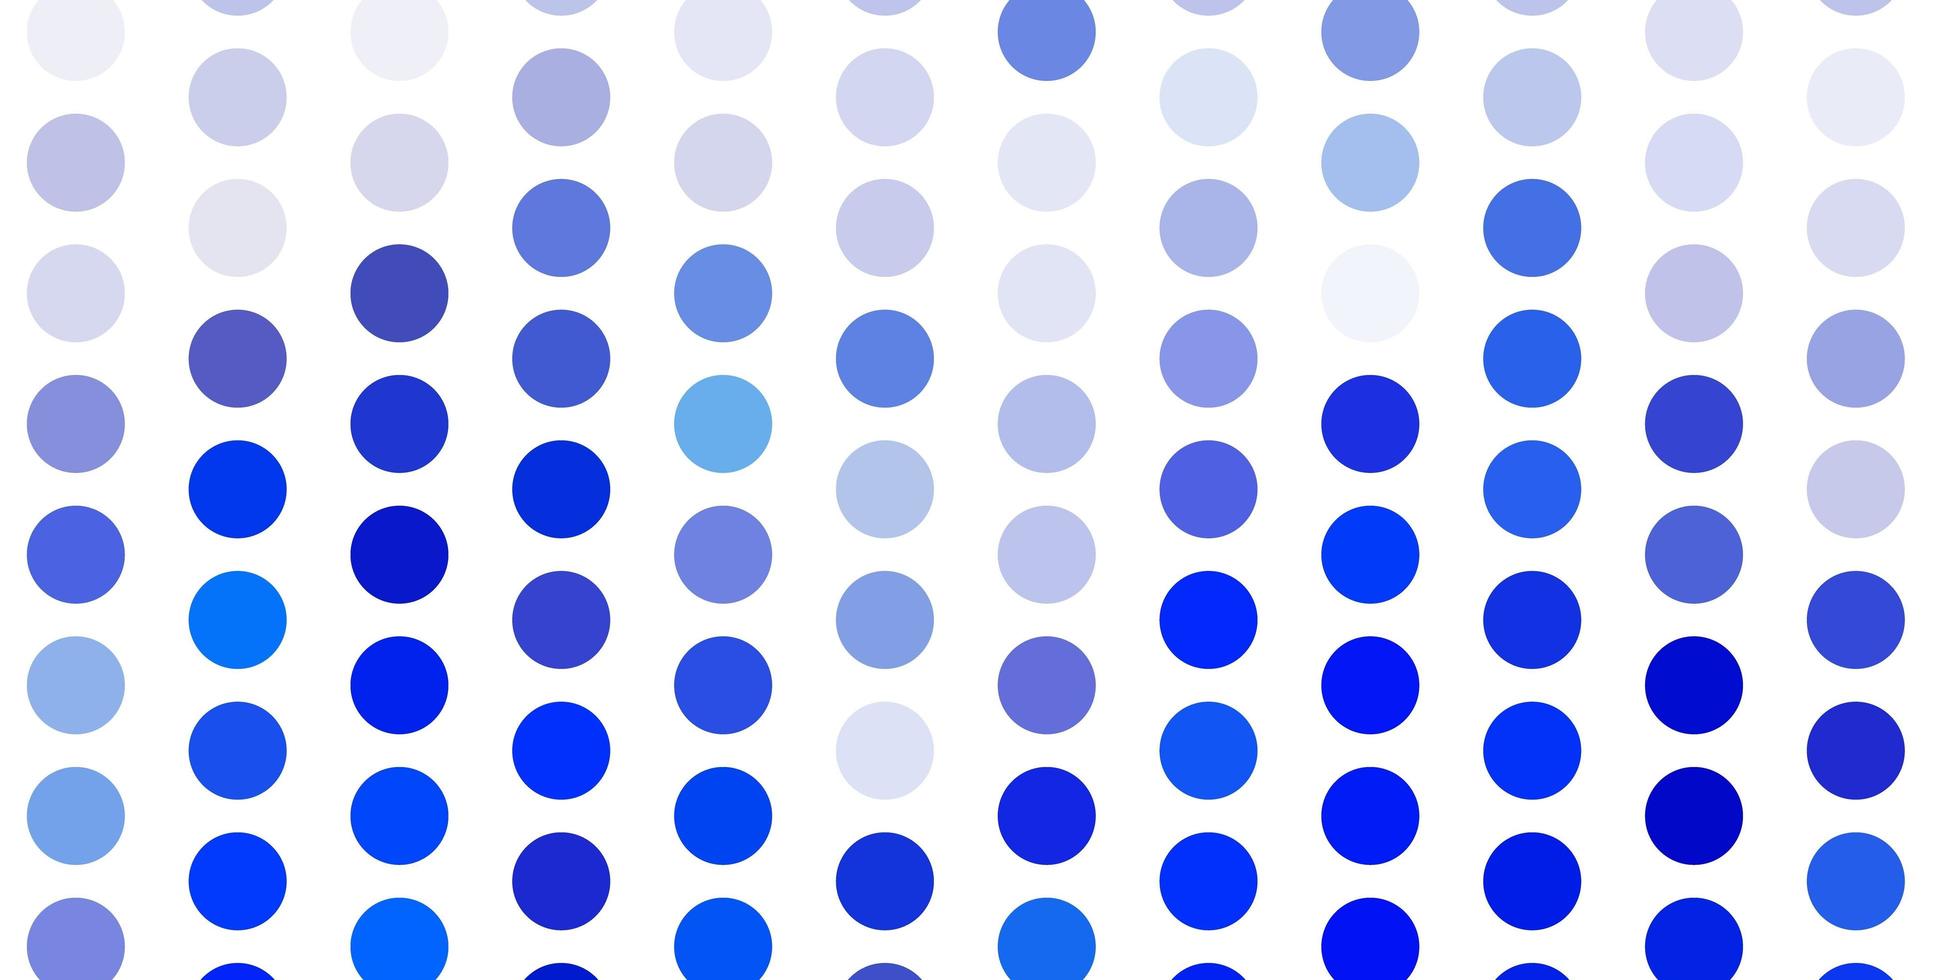 modello vettoriale azzurro con cerchi.